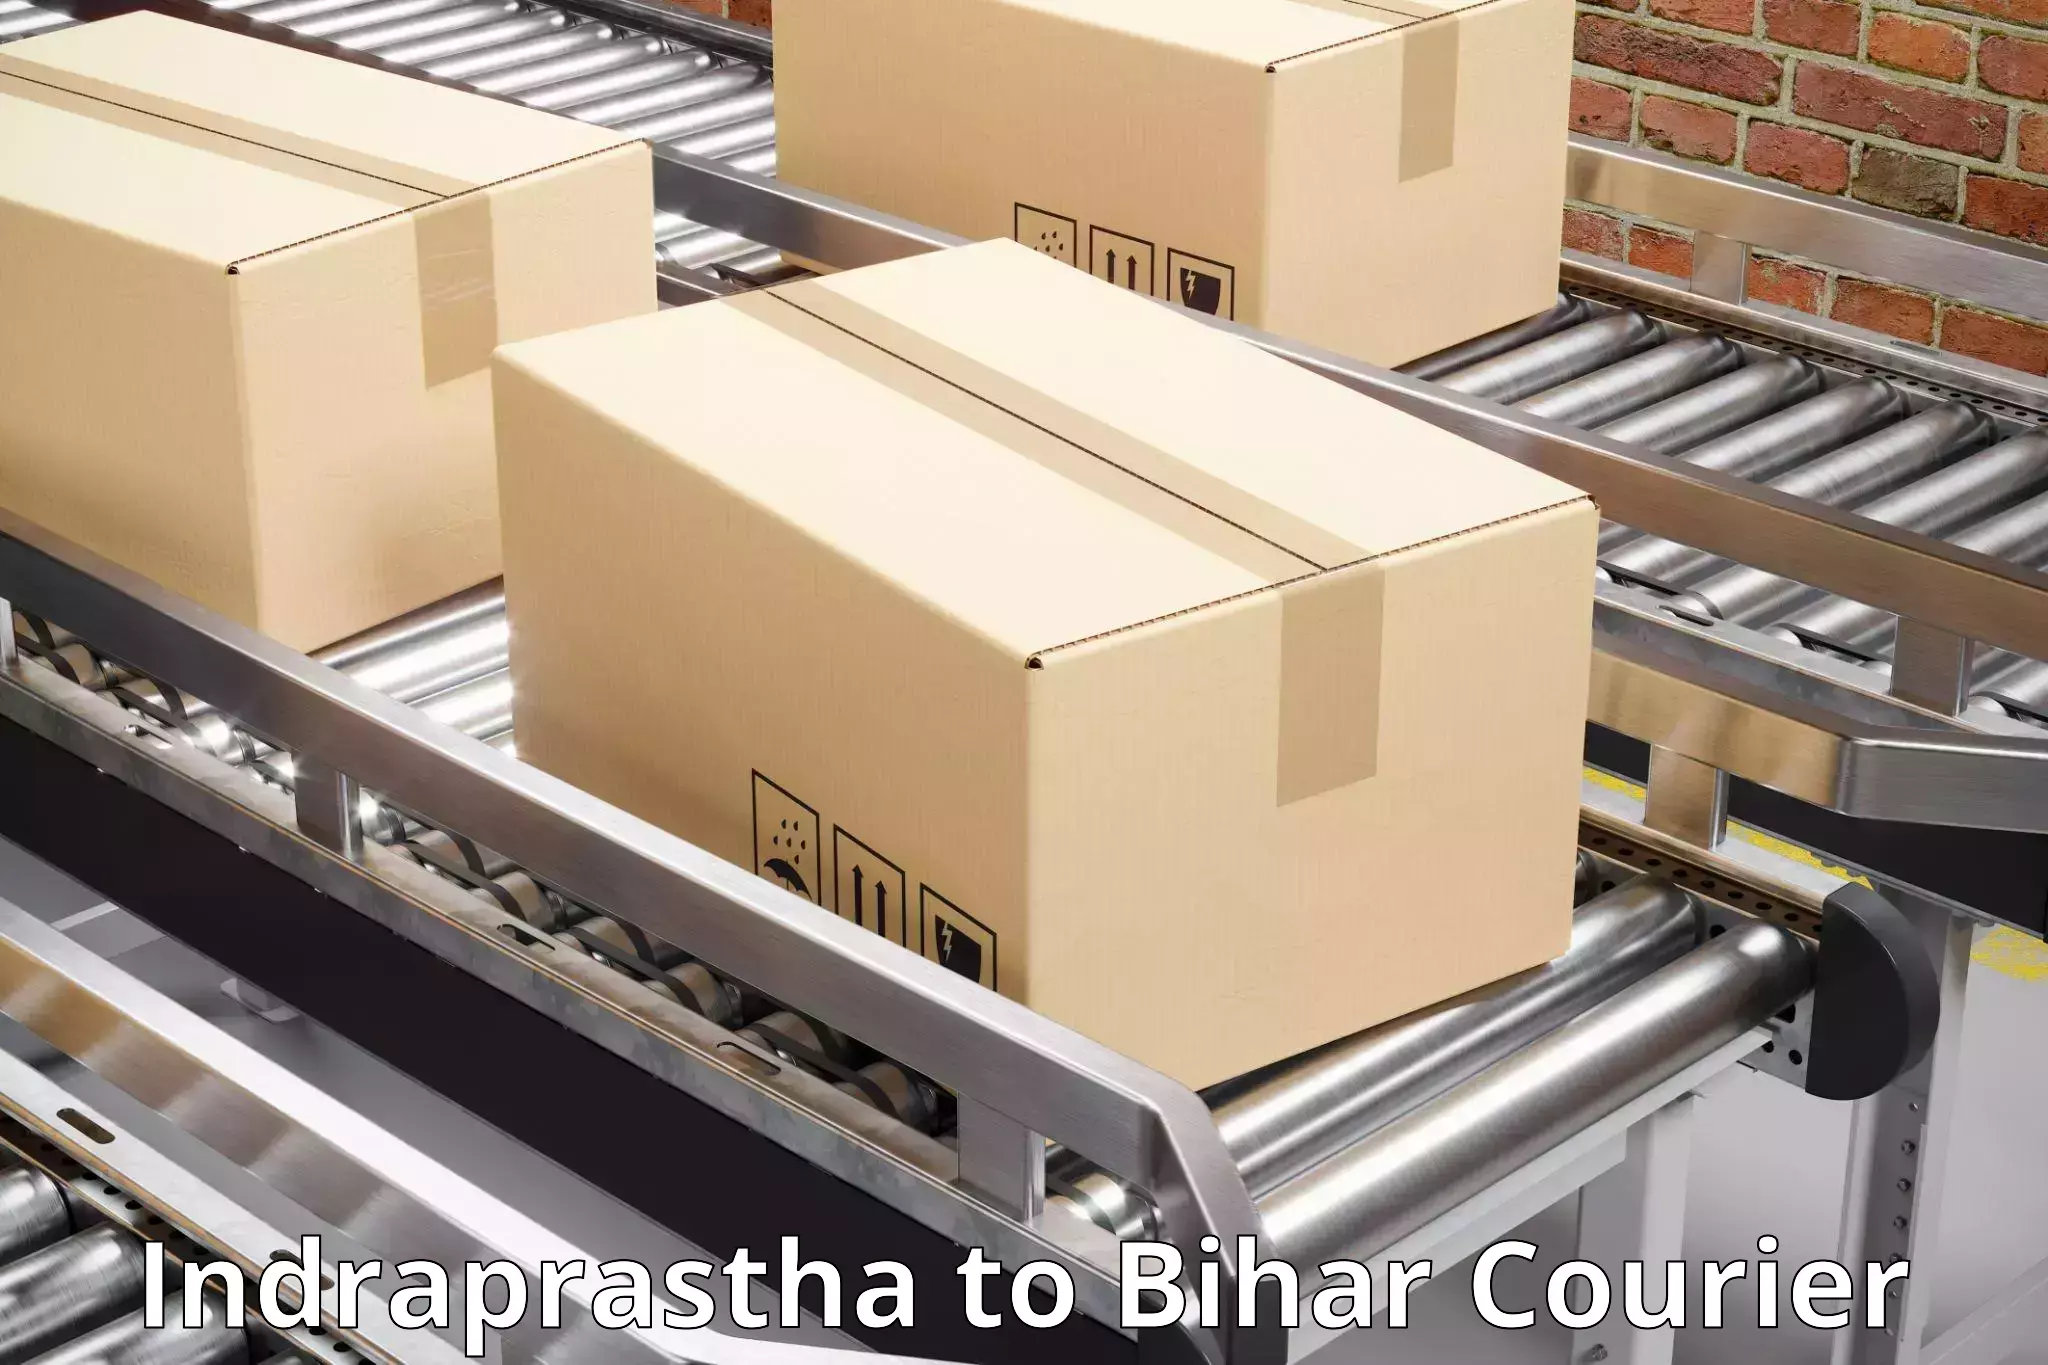 24/7 courier service Indraprastha to Dinara